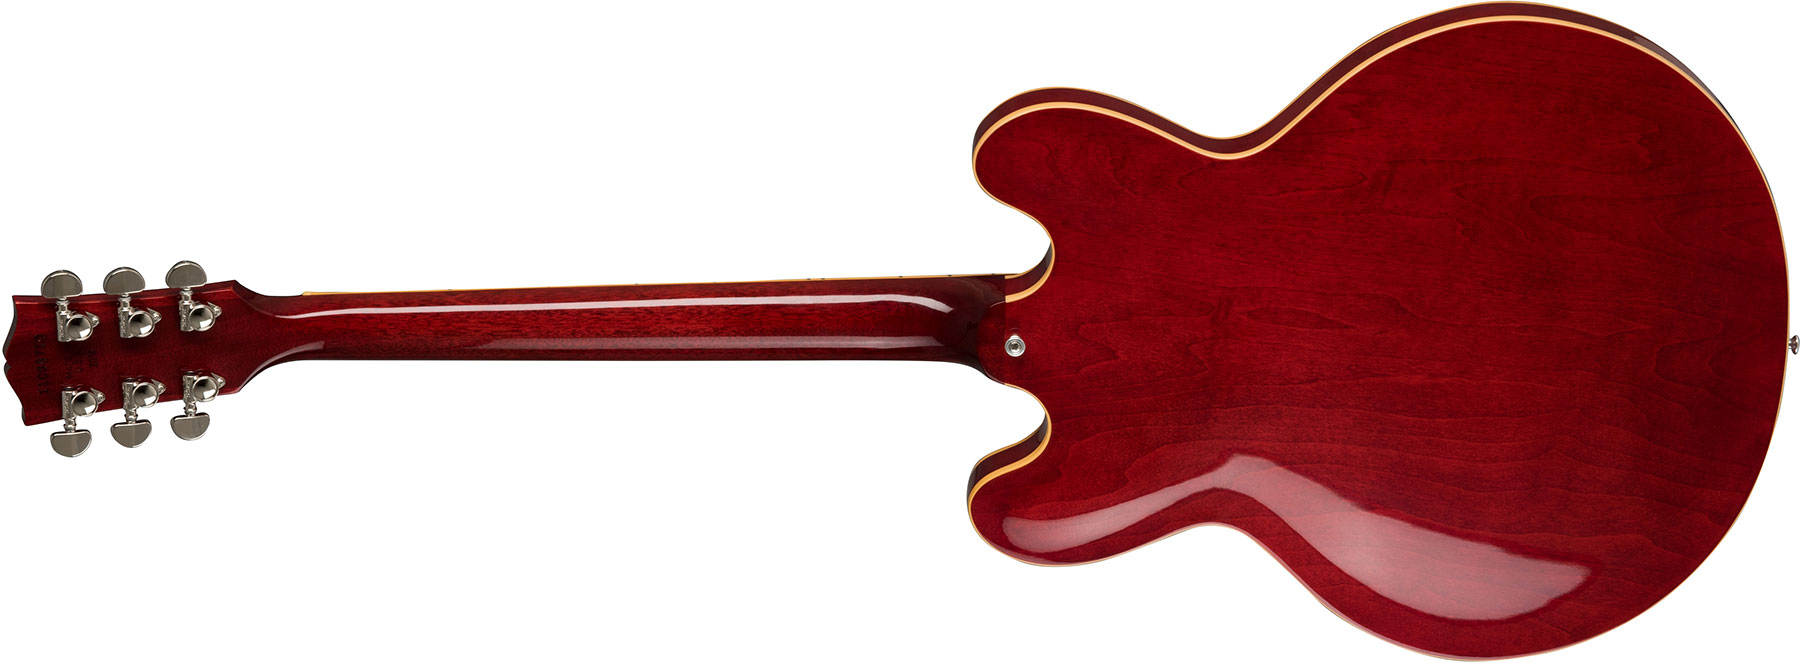 Gibson Es-335 Dot 2019 Hh Ht Rw - Antique Faded Cherry - Guitare Électrique 1/2 Caisse - Variation 2